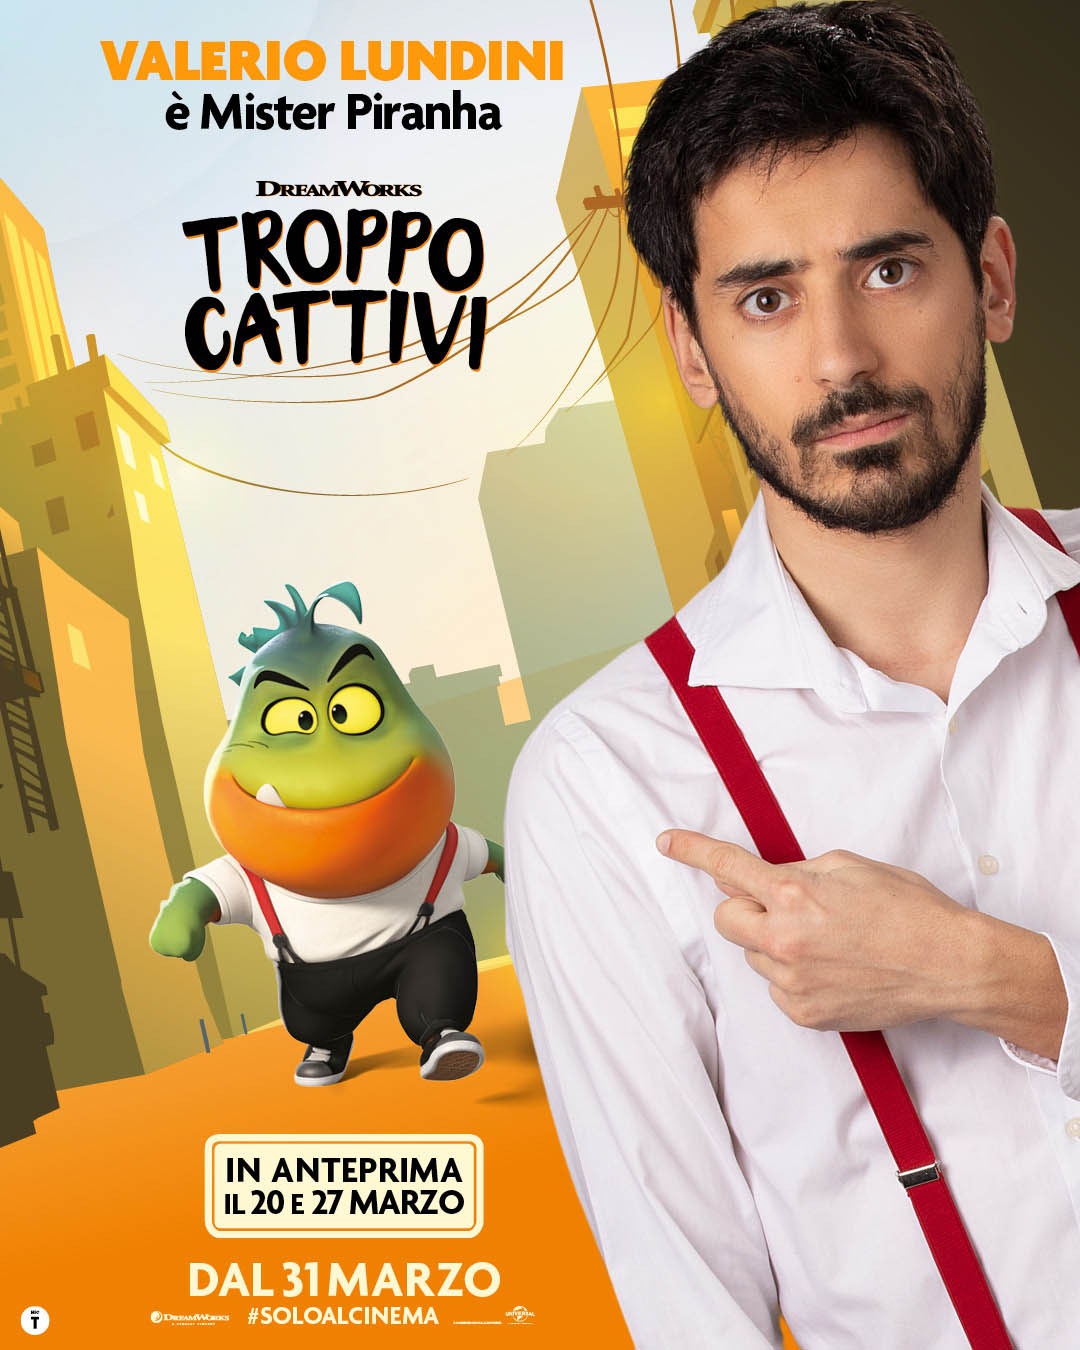 Poster Personaggio Mister Piranha (Valerio Lundini) [credit: courtesy of Universal Pictures]